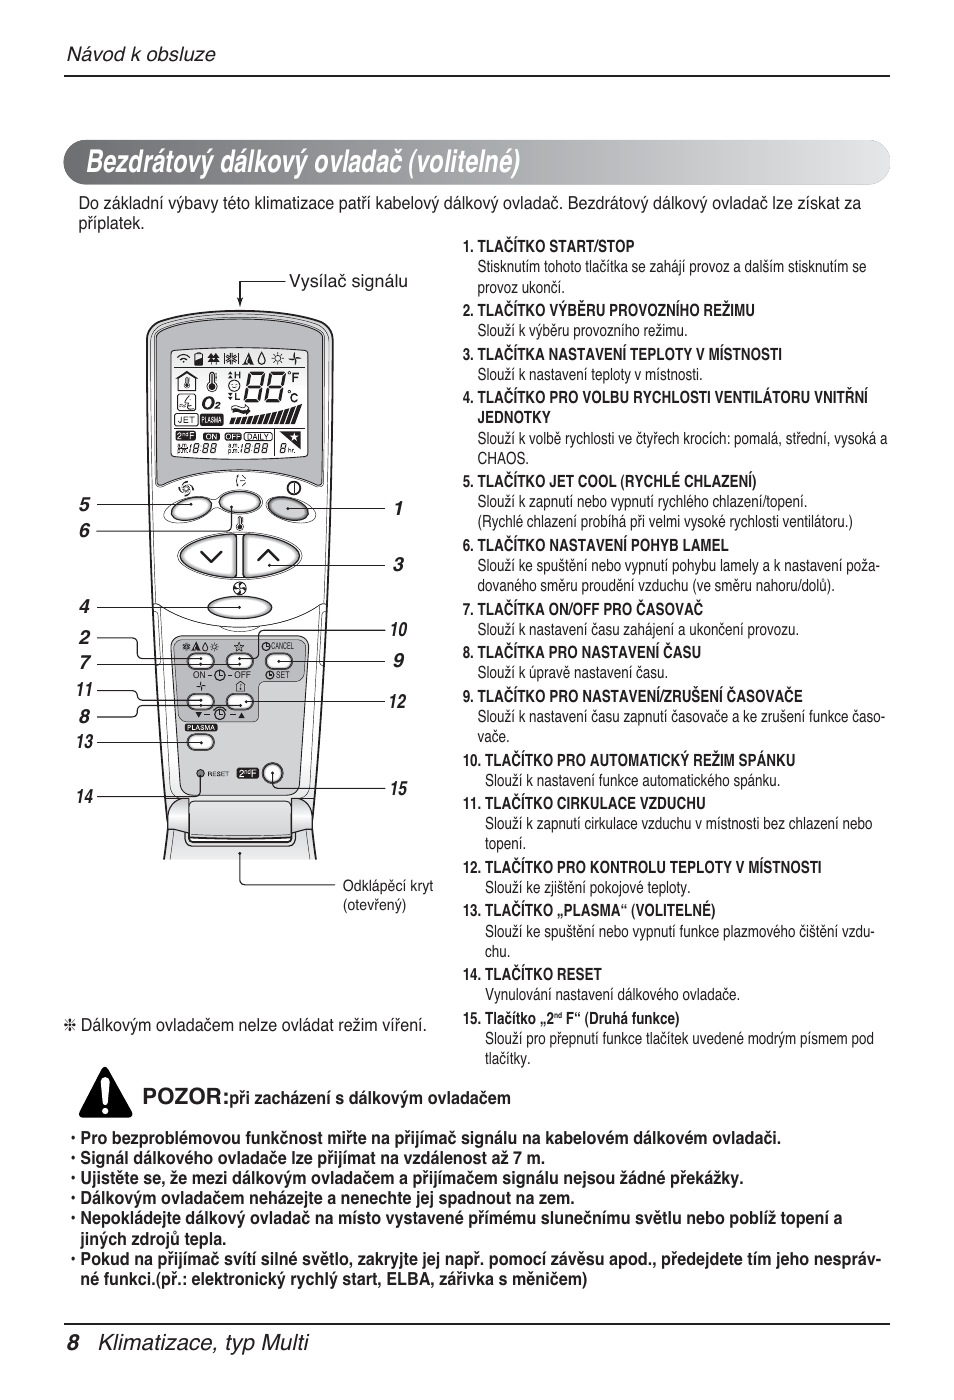 Bezdrátový dálkový ovladač (volitelné), 8 klimatizace, typ multi, Pozor | LG  MT12AH User Manual | Page 236 / 480